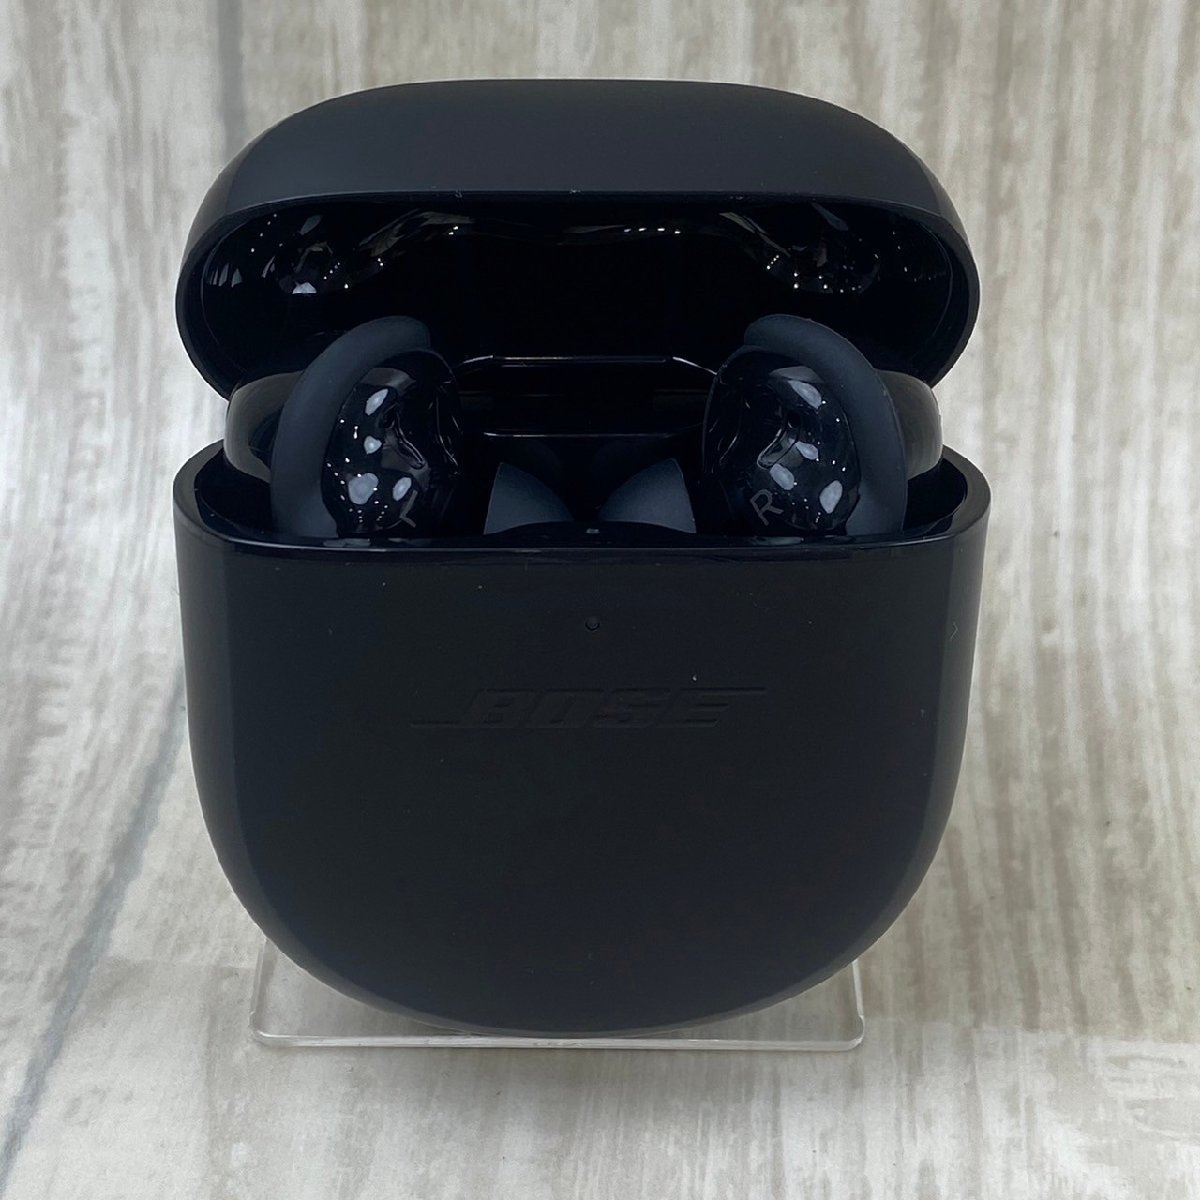 USED прекрасный товар BOSE Bose QUIET COMFORT EARBUDSⅡ беспроводной слуховай аппарат черный шум отмена кольцо руководство пользователя рабочее состояние подтверждено принадлежности с ящиком 